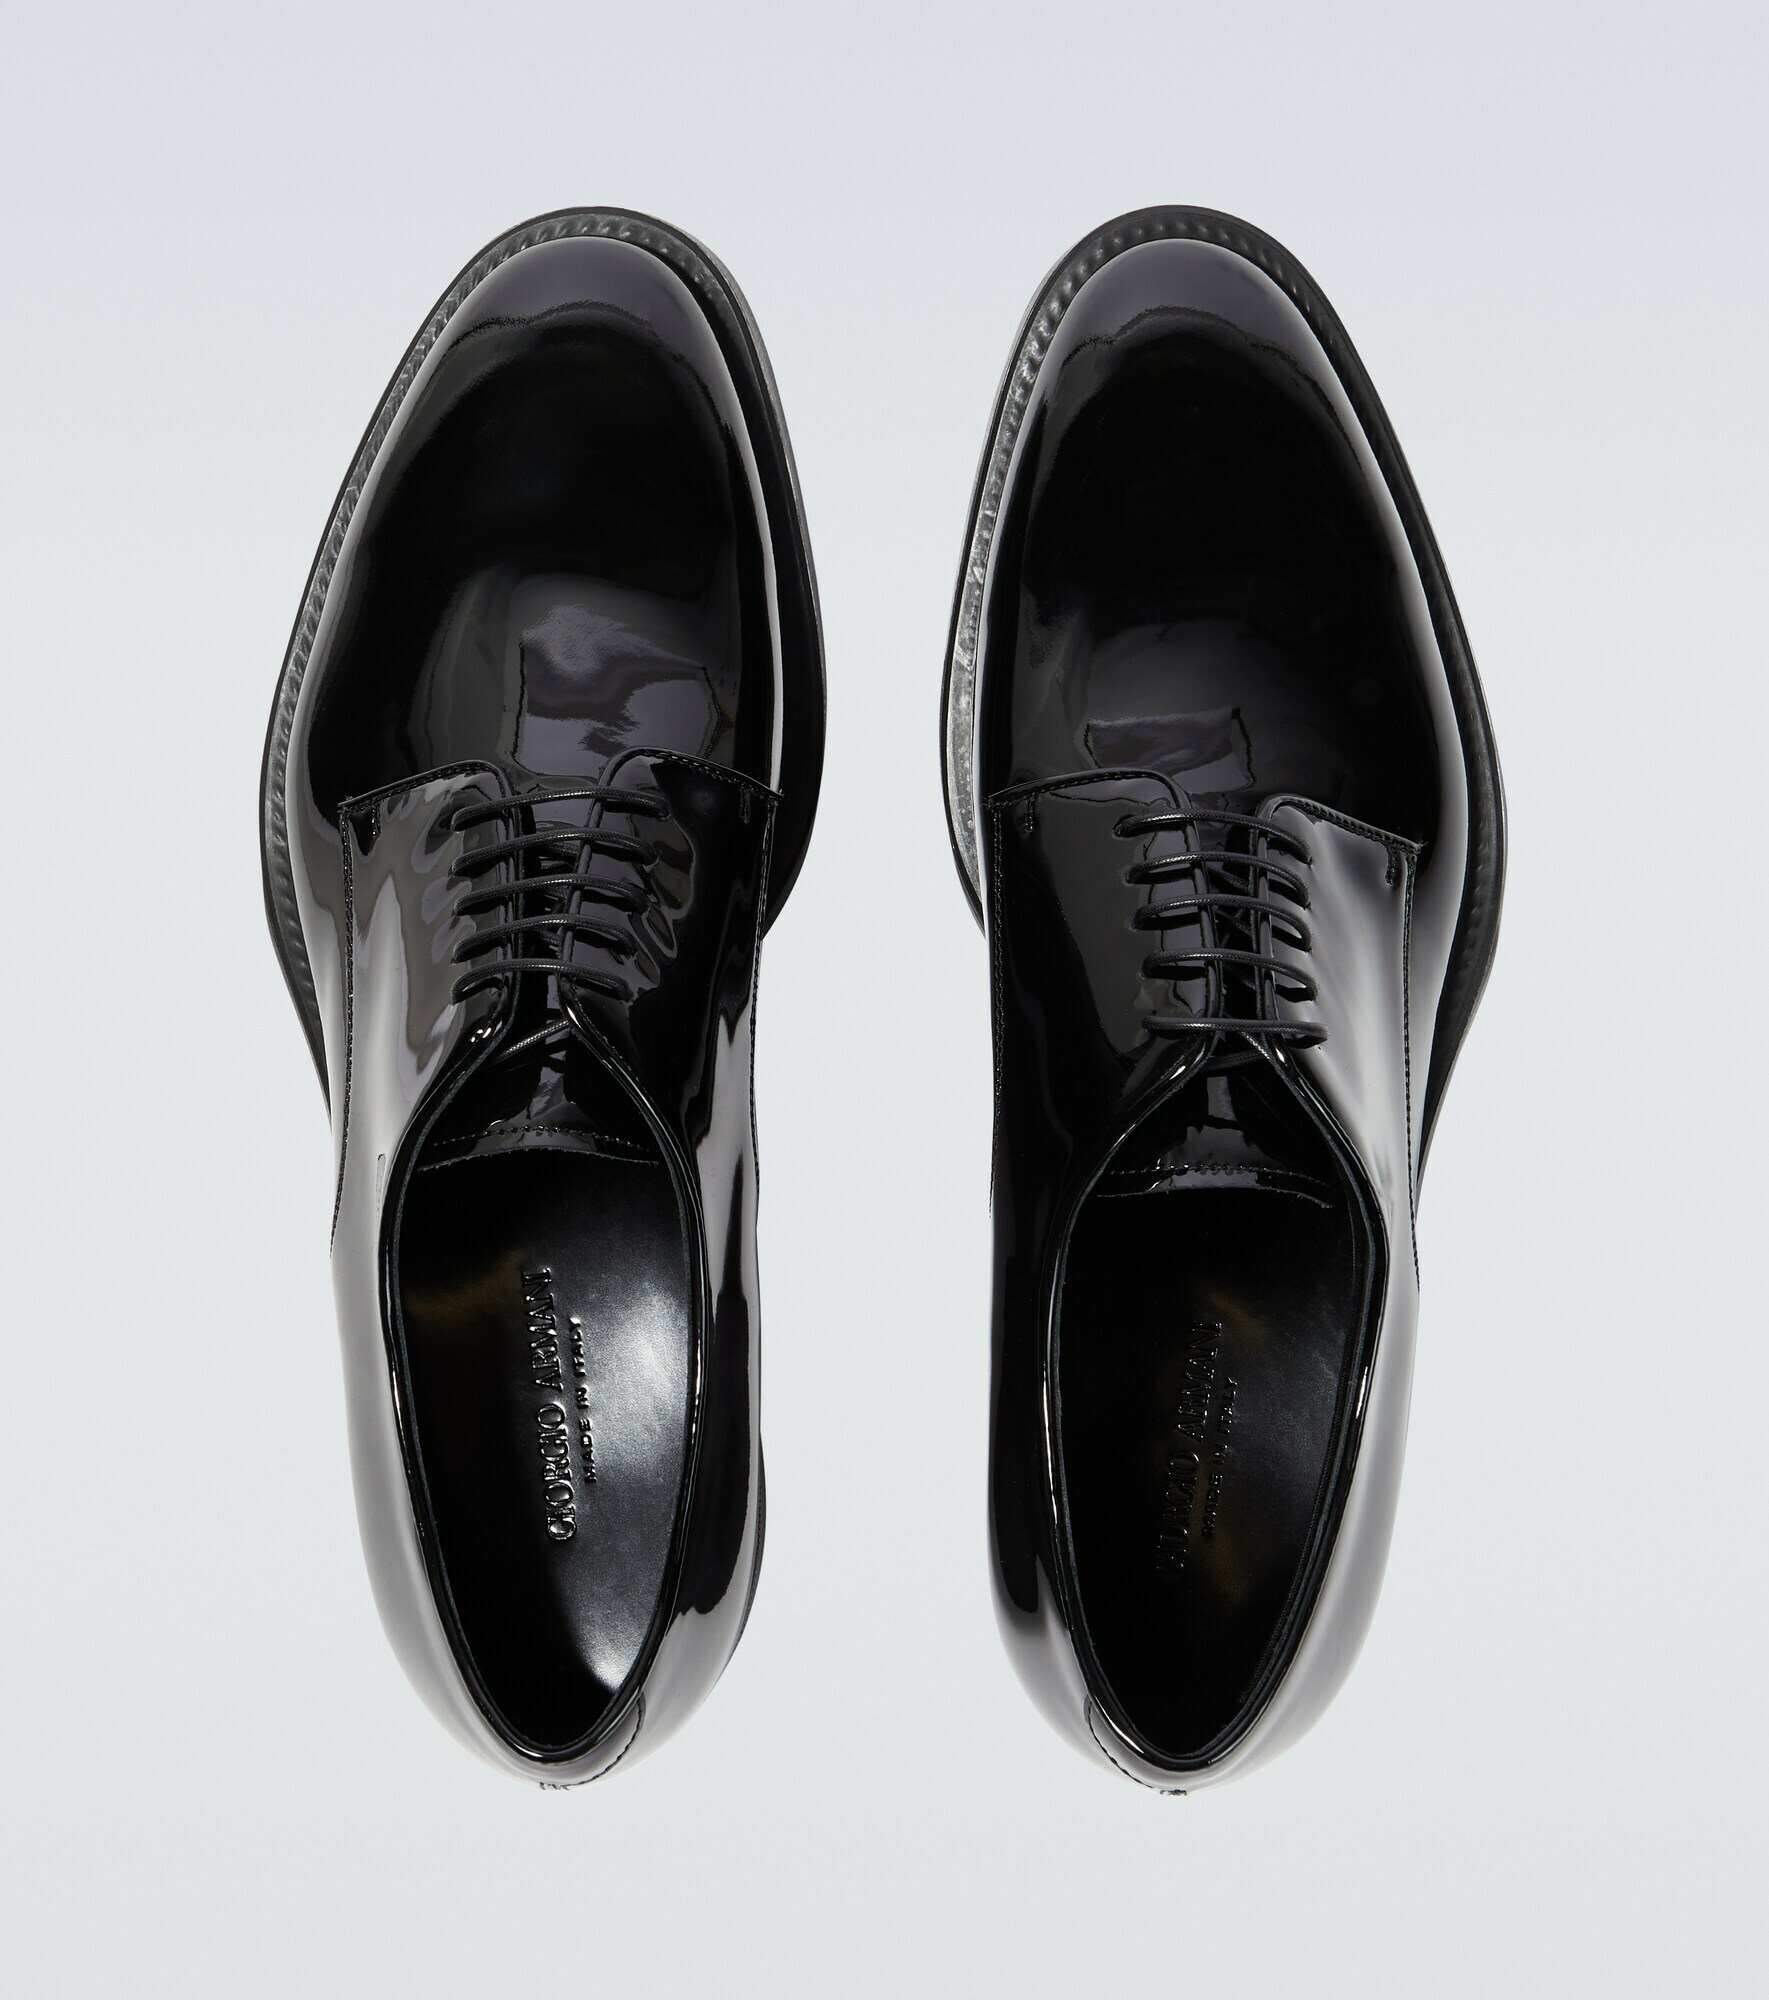 Giorgio Armani - Patent leather derby shoes Giorgio Armani